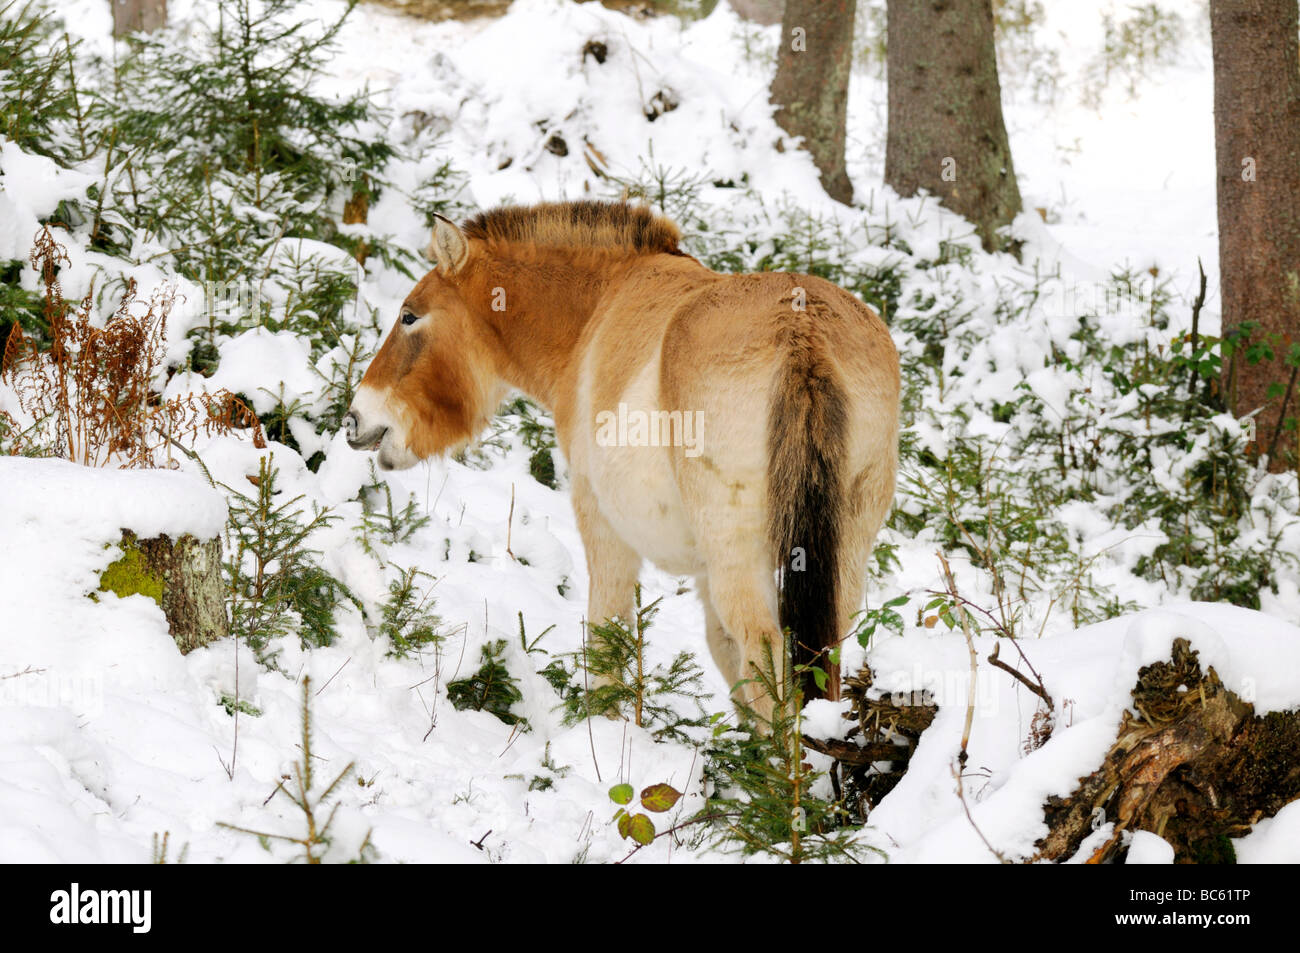 Le cheval de Przewalski (Equus caballus przewalskii) debout, en forêt, parc national de la forêt bavaroise, Bavière, Allemagne Banque D'Images